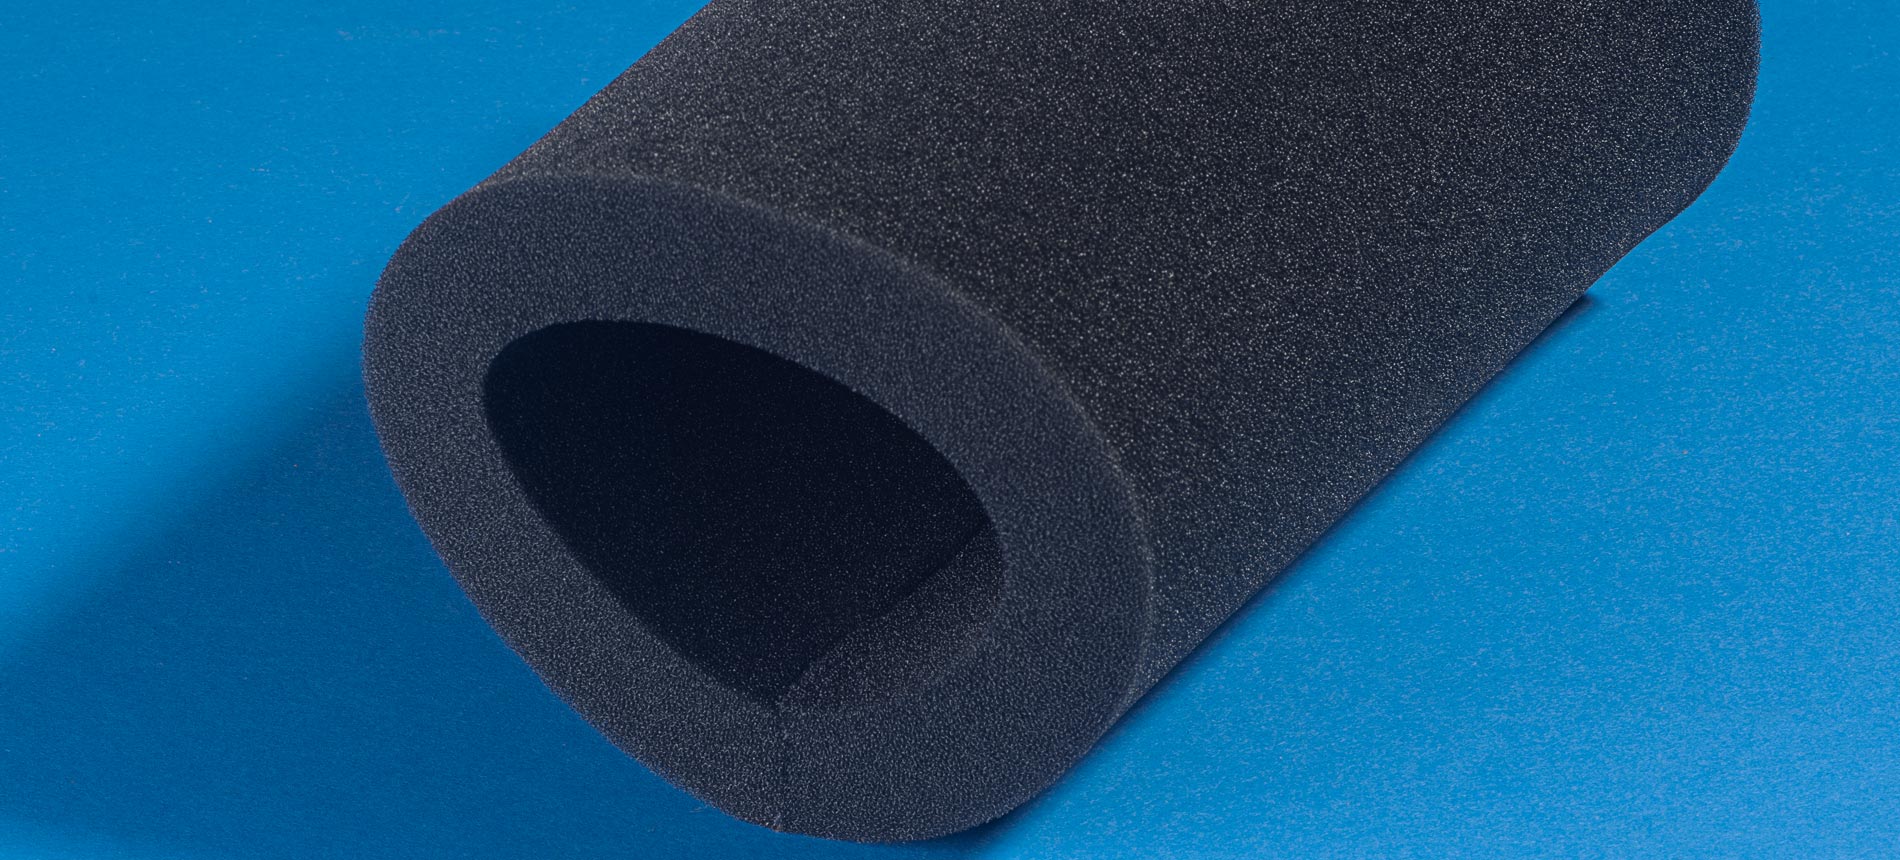 Filterschaum PPI 10 dunkel — Material — raumprobe